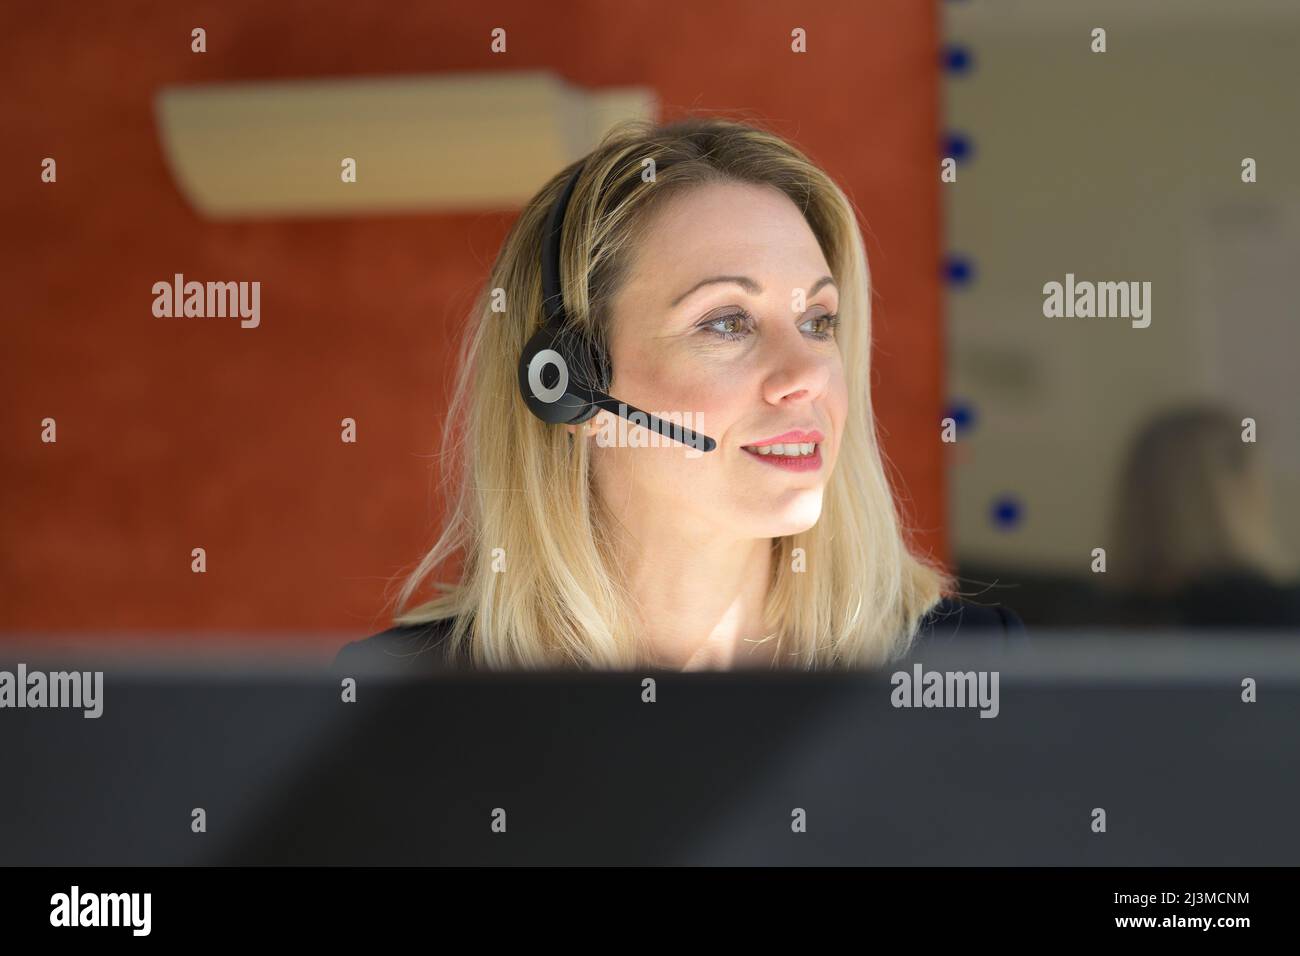 La réceptionniste ou l'opérateur du centre d'appels prend un appel téléphonique sur un casque vu par le haut de son ordinateur alors qu'elle regarde de côté avec un sourire Banque D'Images